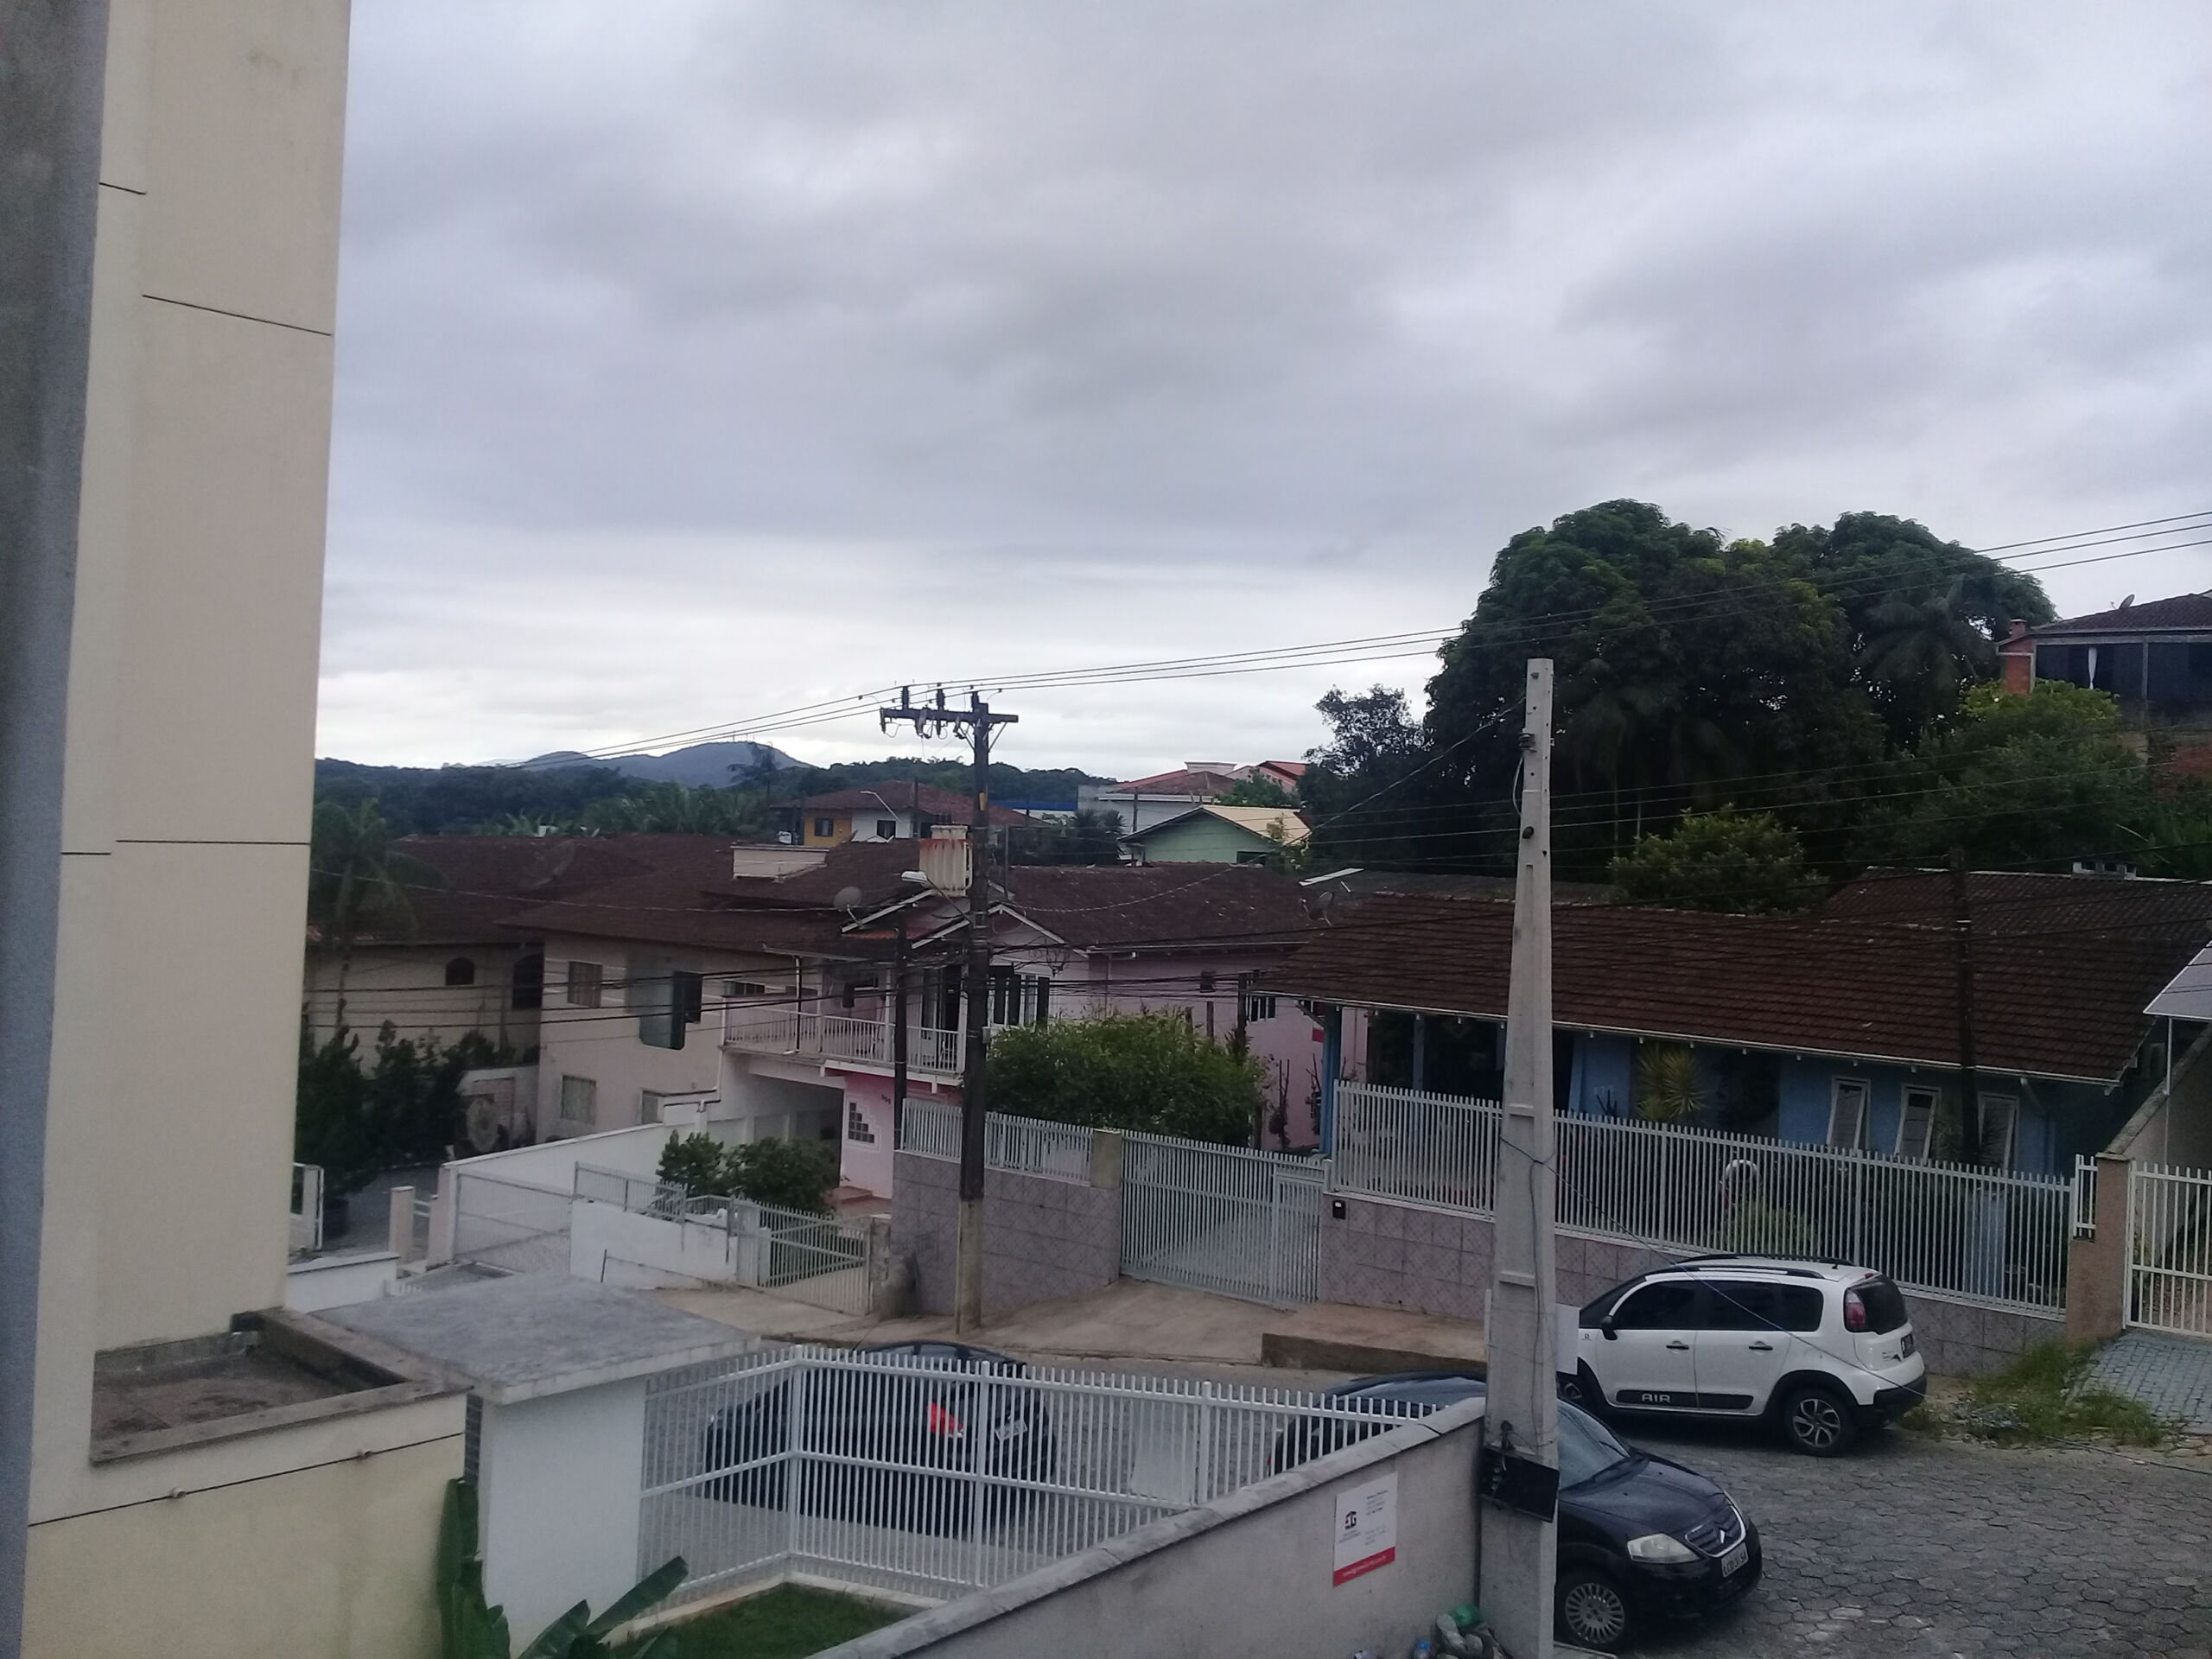 Sobrado Geminado – 3 dormitórios(1 suite) – Lugar alto – Vista panorâmica – Nova Brasília